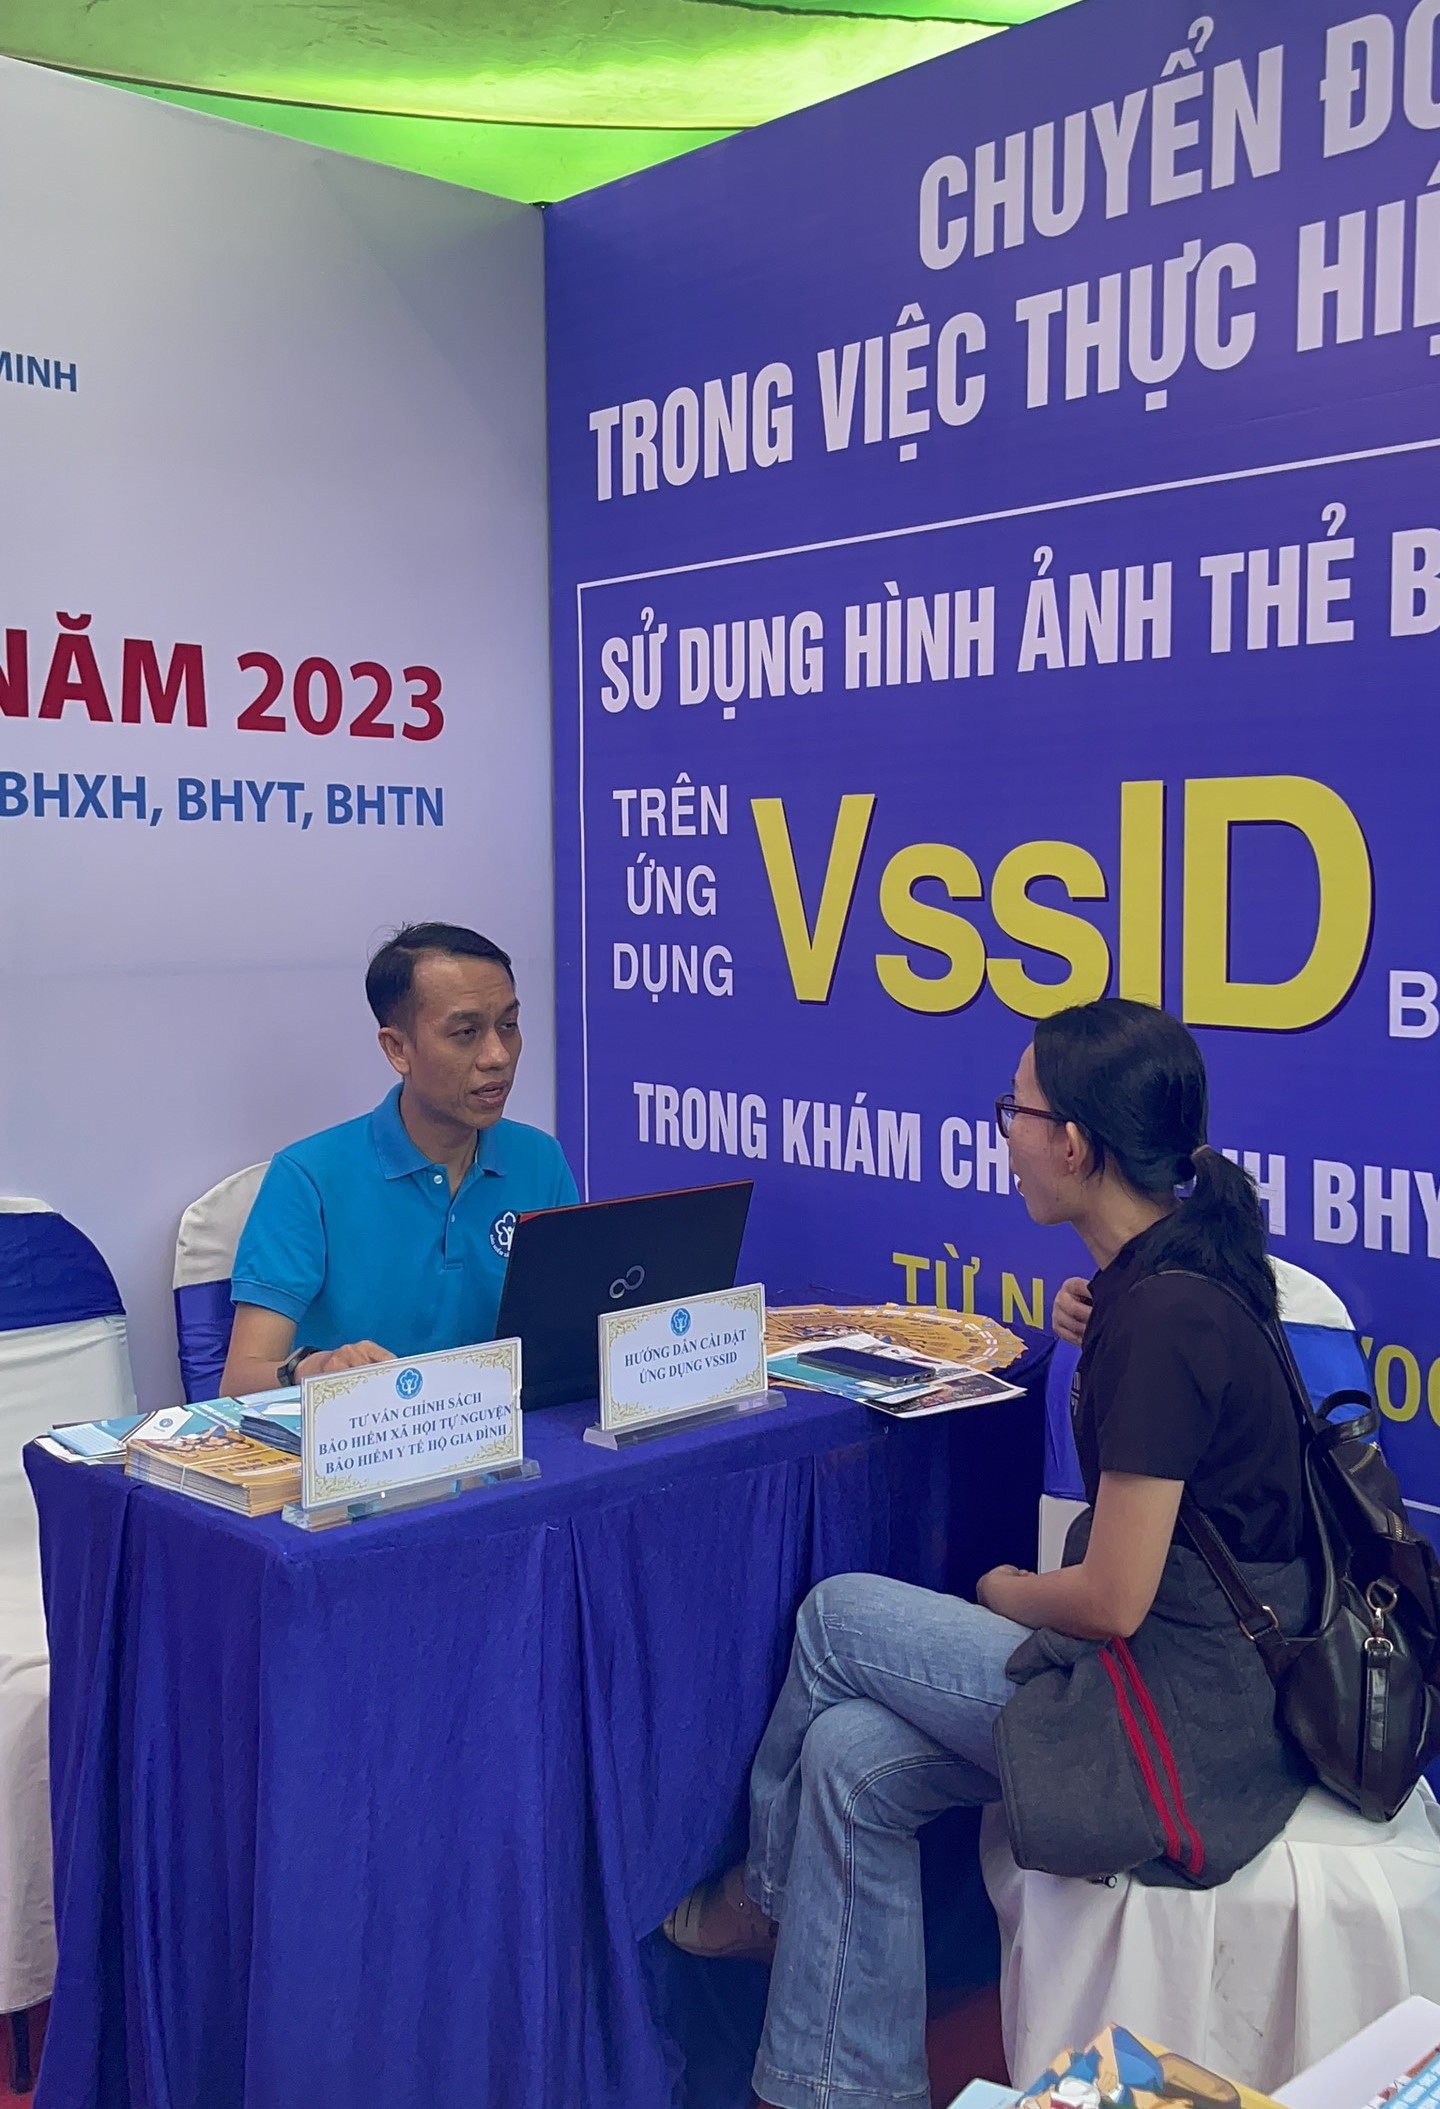 Ứng dụng VssID của BHXH Việt Nam đứng thứ 1 trong nhóm ứng dụng về Kinh doanh